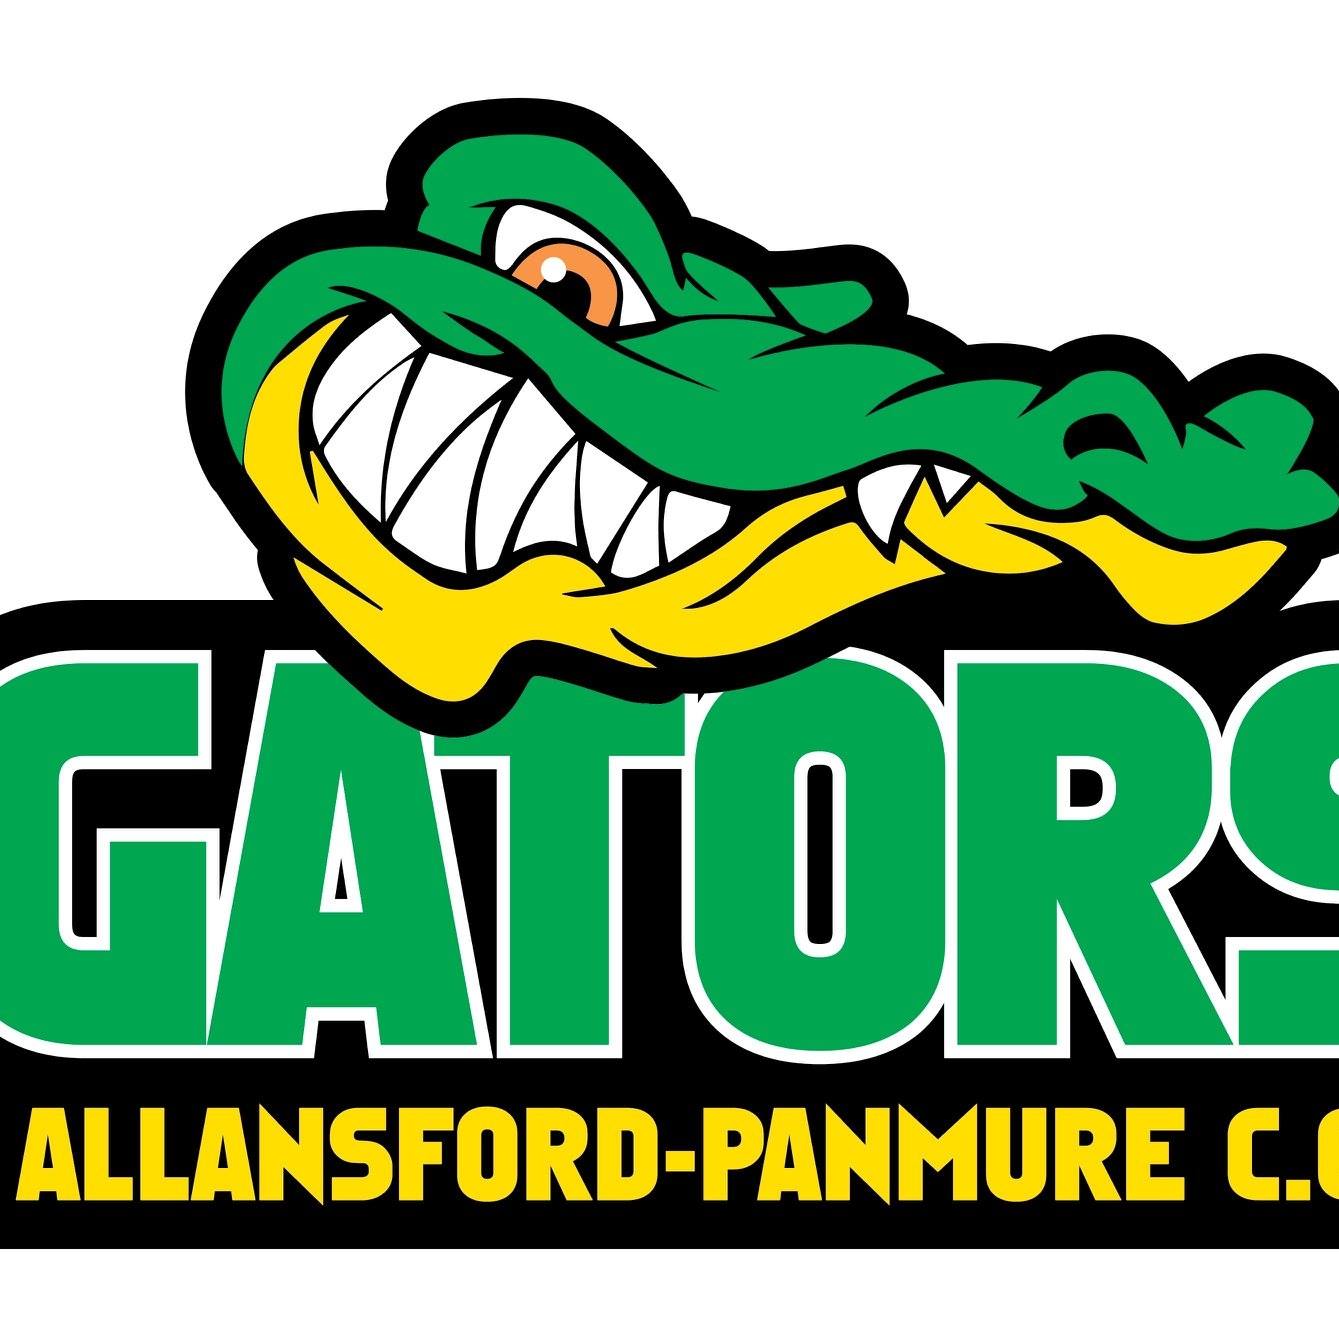 Allansford gators